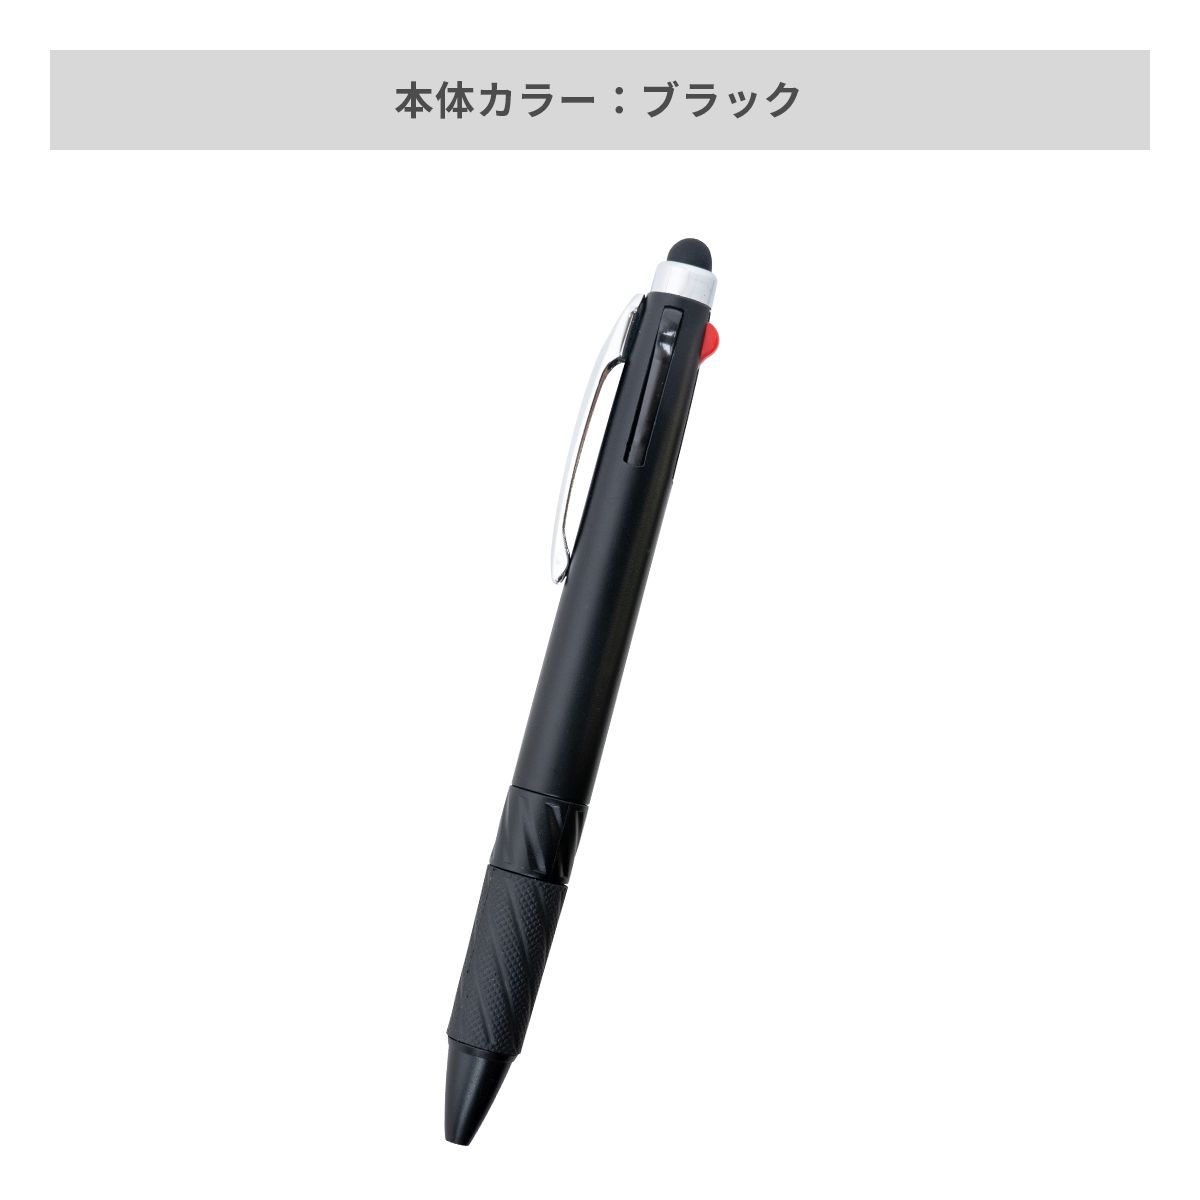 タッチペン付3色ボールペン【多機能ペン / パッド印刷】 画像5